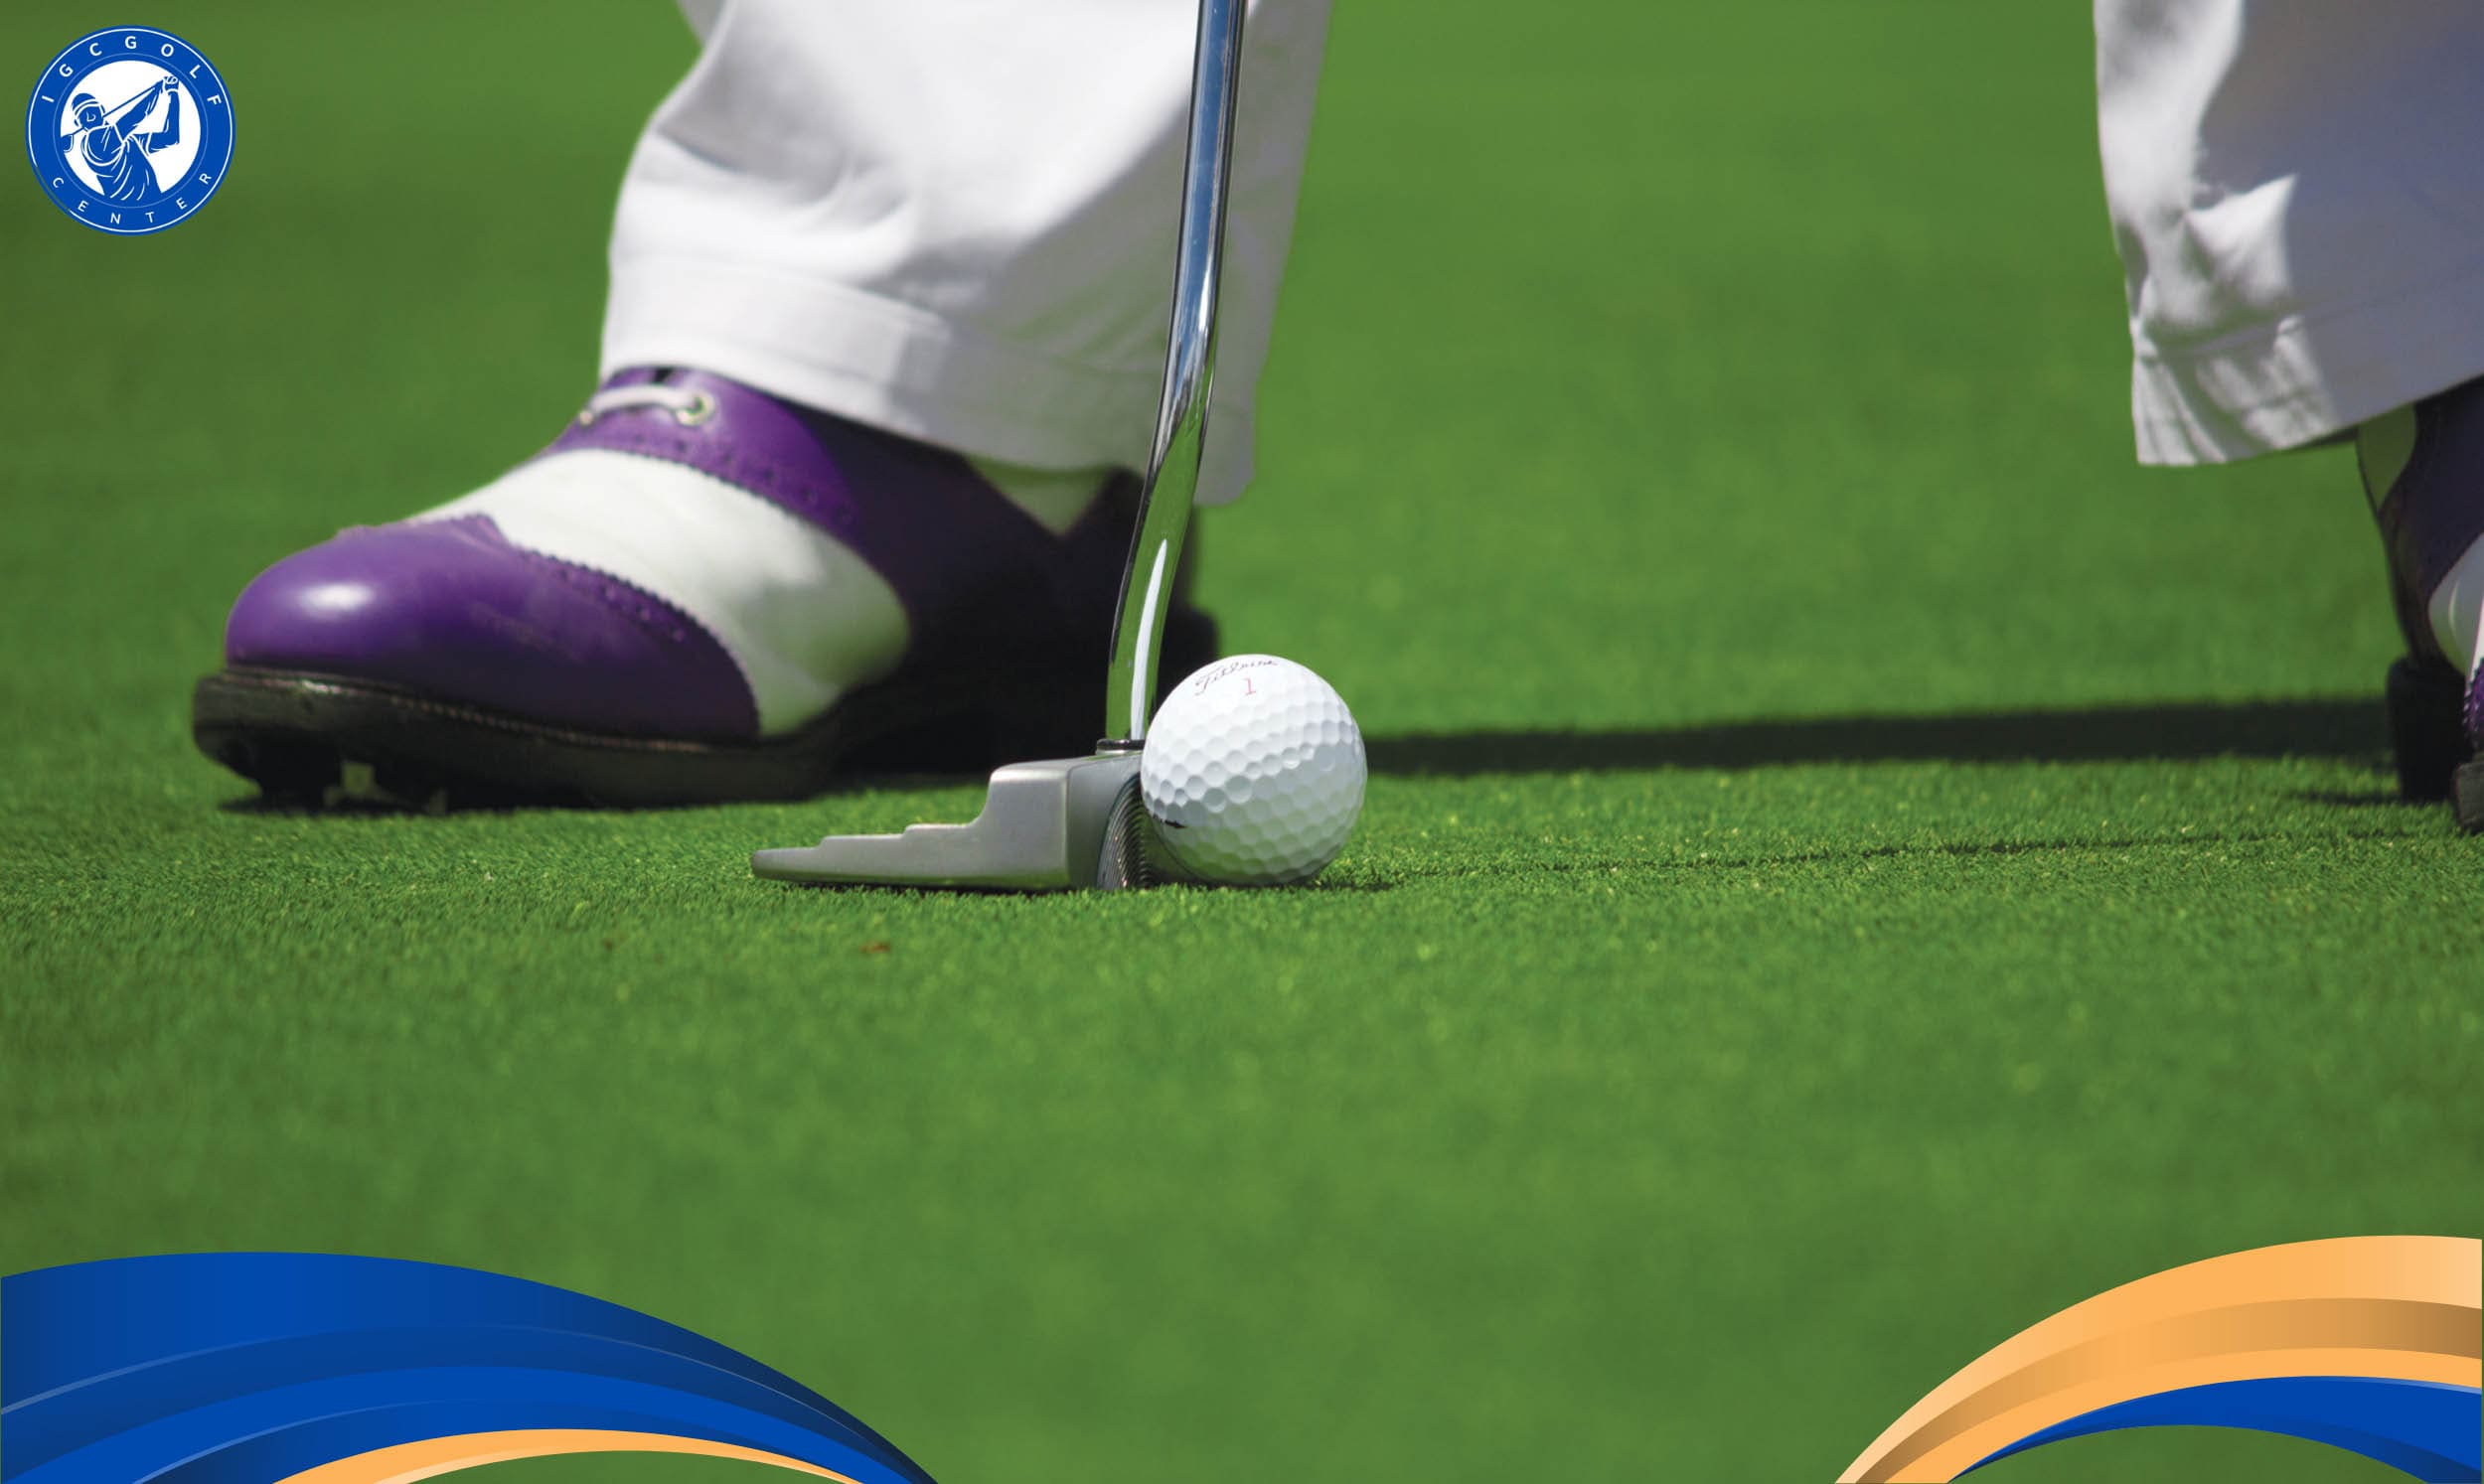 Quyền lợi khi đăng ký học đánh golf cơ bản và nâng cao ở Khánh Hòa tại IGC Center